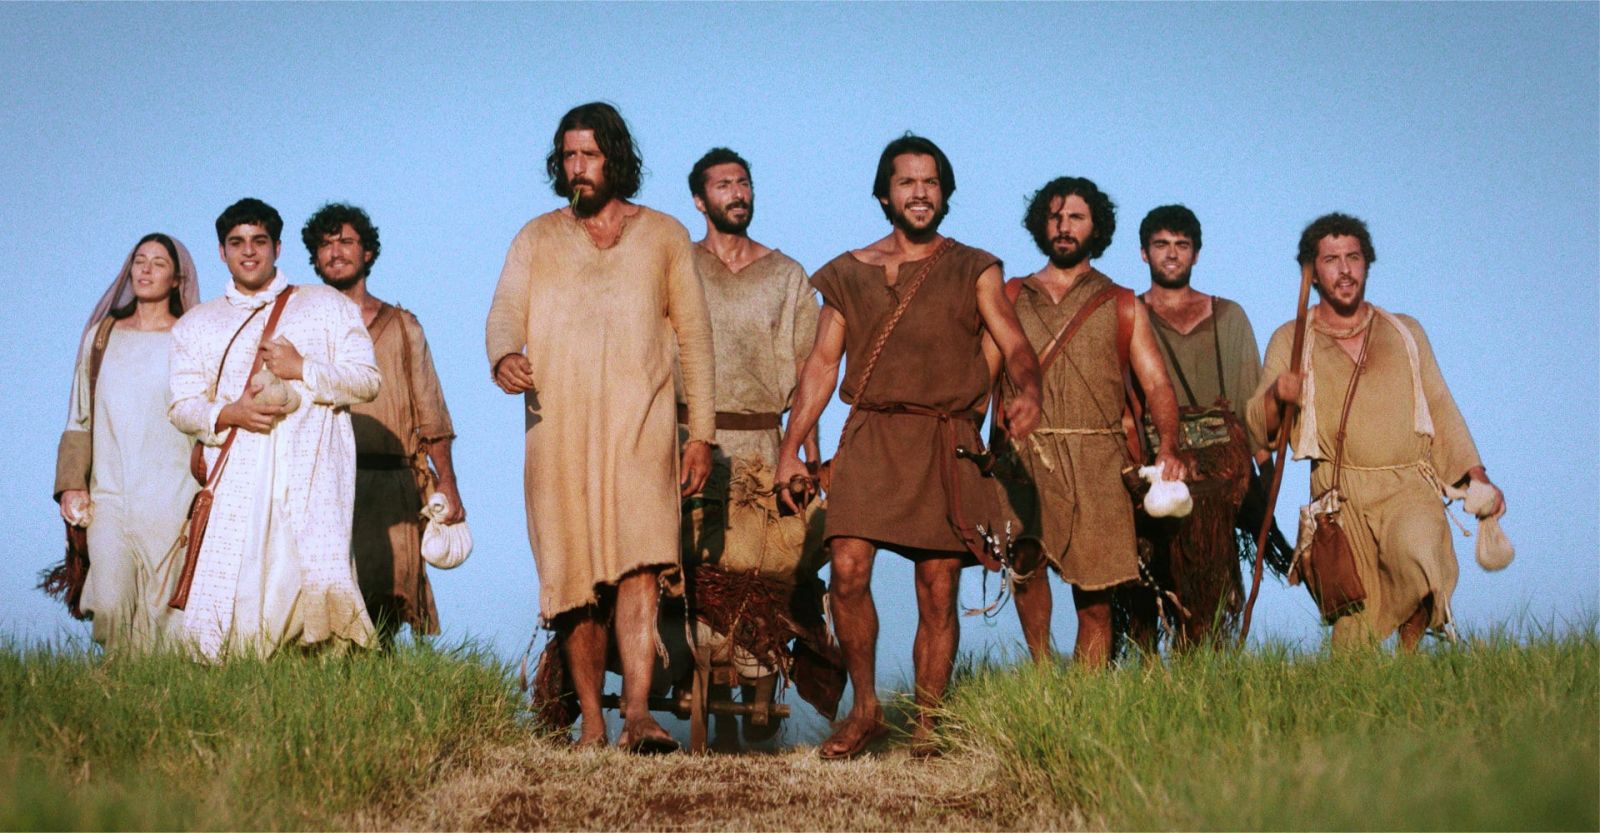 O elenco principal da primeira temporada (esquerda à direita), Maria Madalena, Mateus, João, Jesus, "Tiagão", Pedro, André, Tadeu e Tiago. (Foto/Reprodução: Jesus.de)